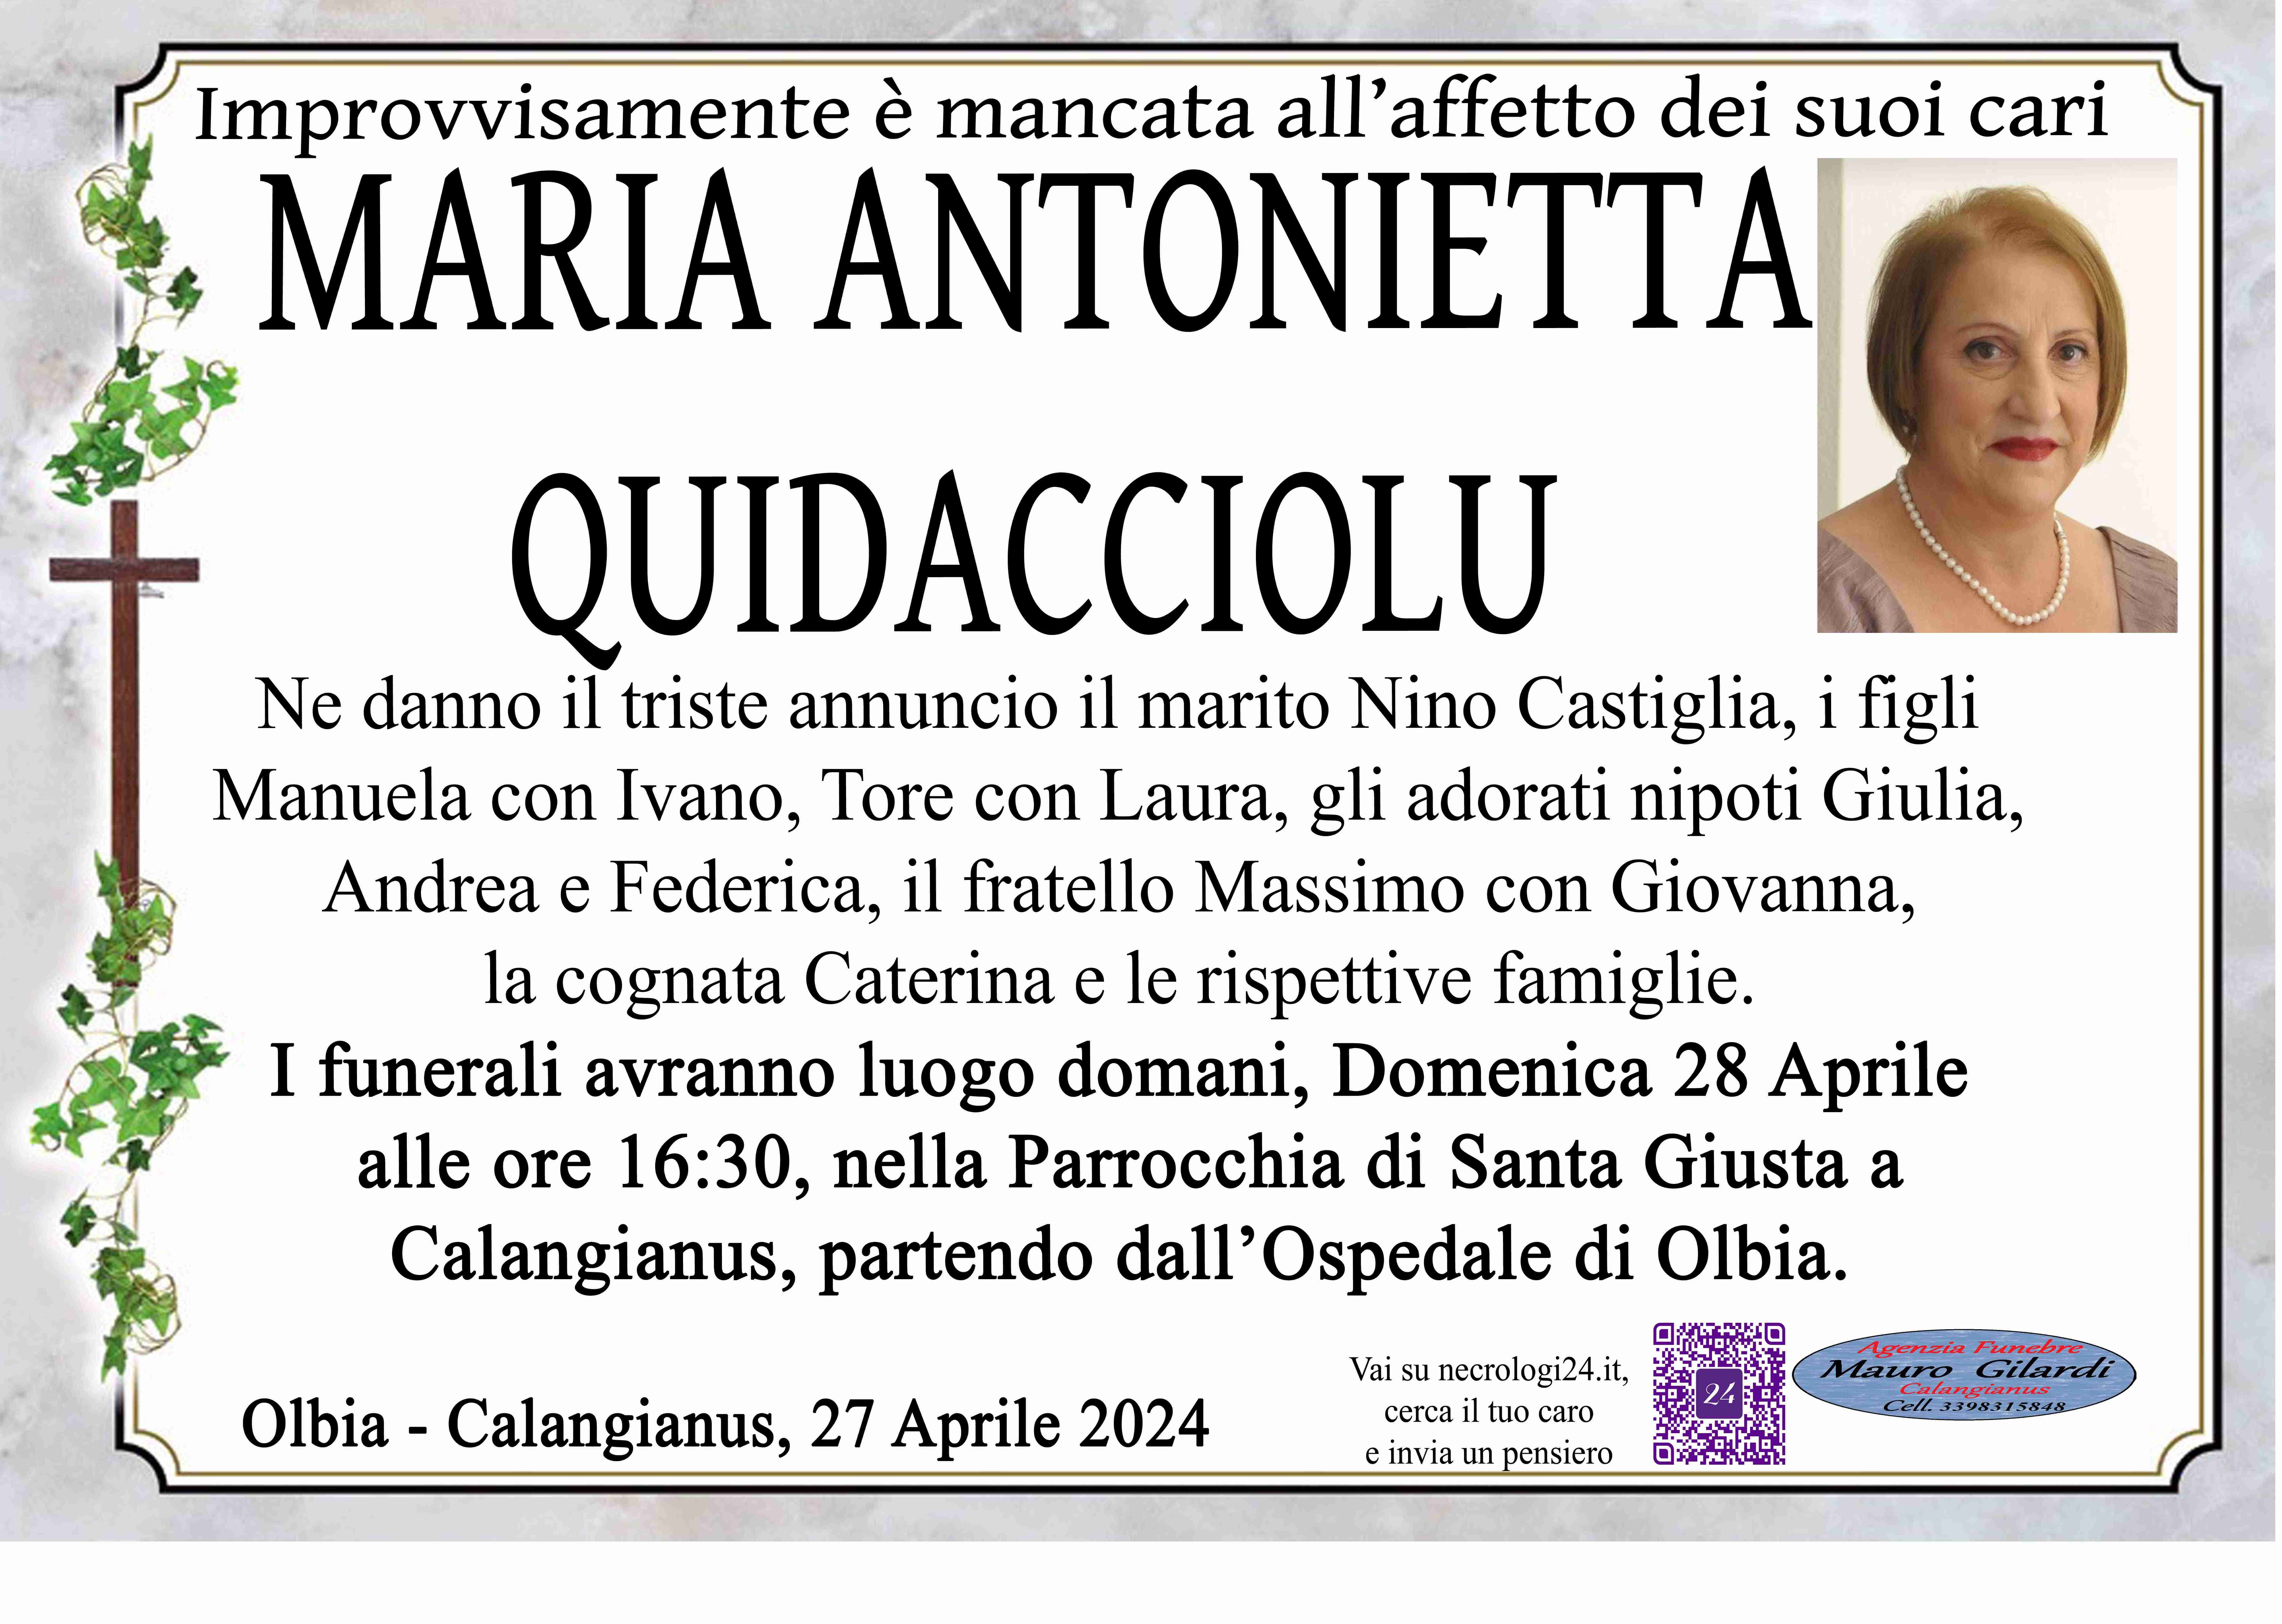 Maria Antonietta Quidacciolu